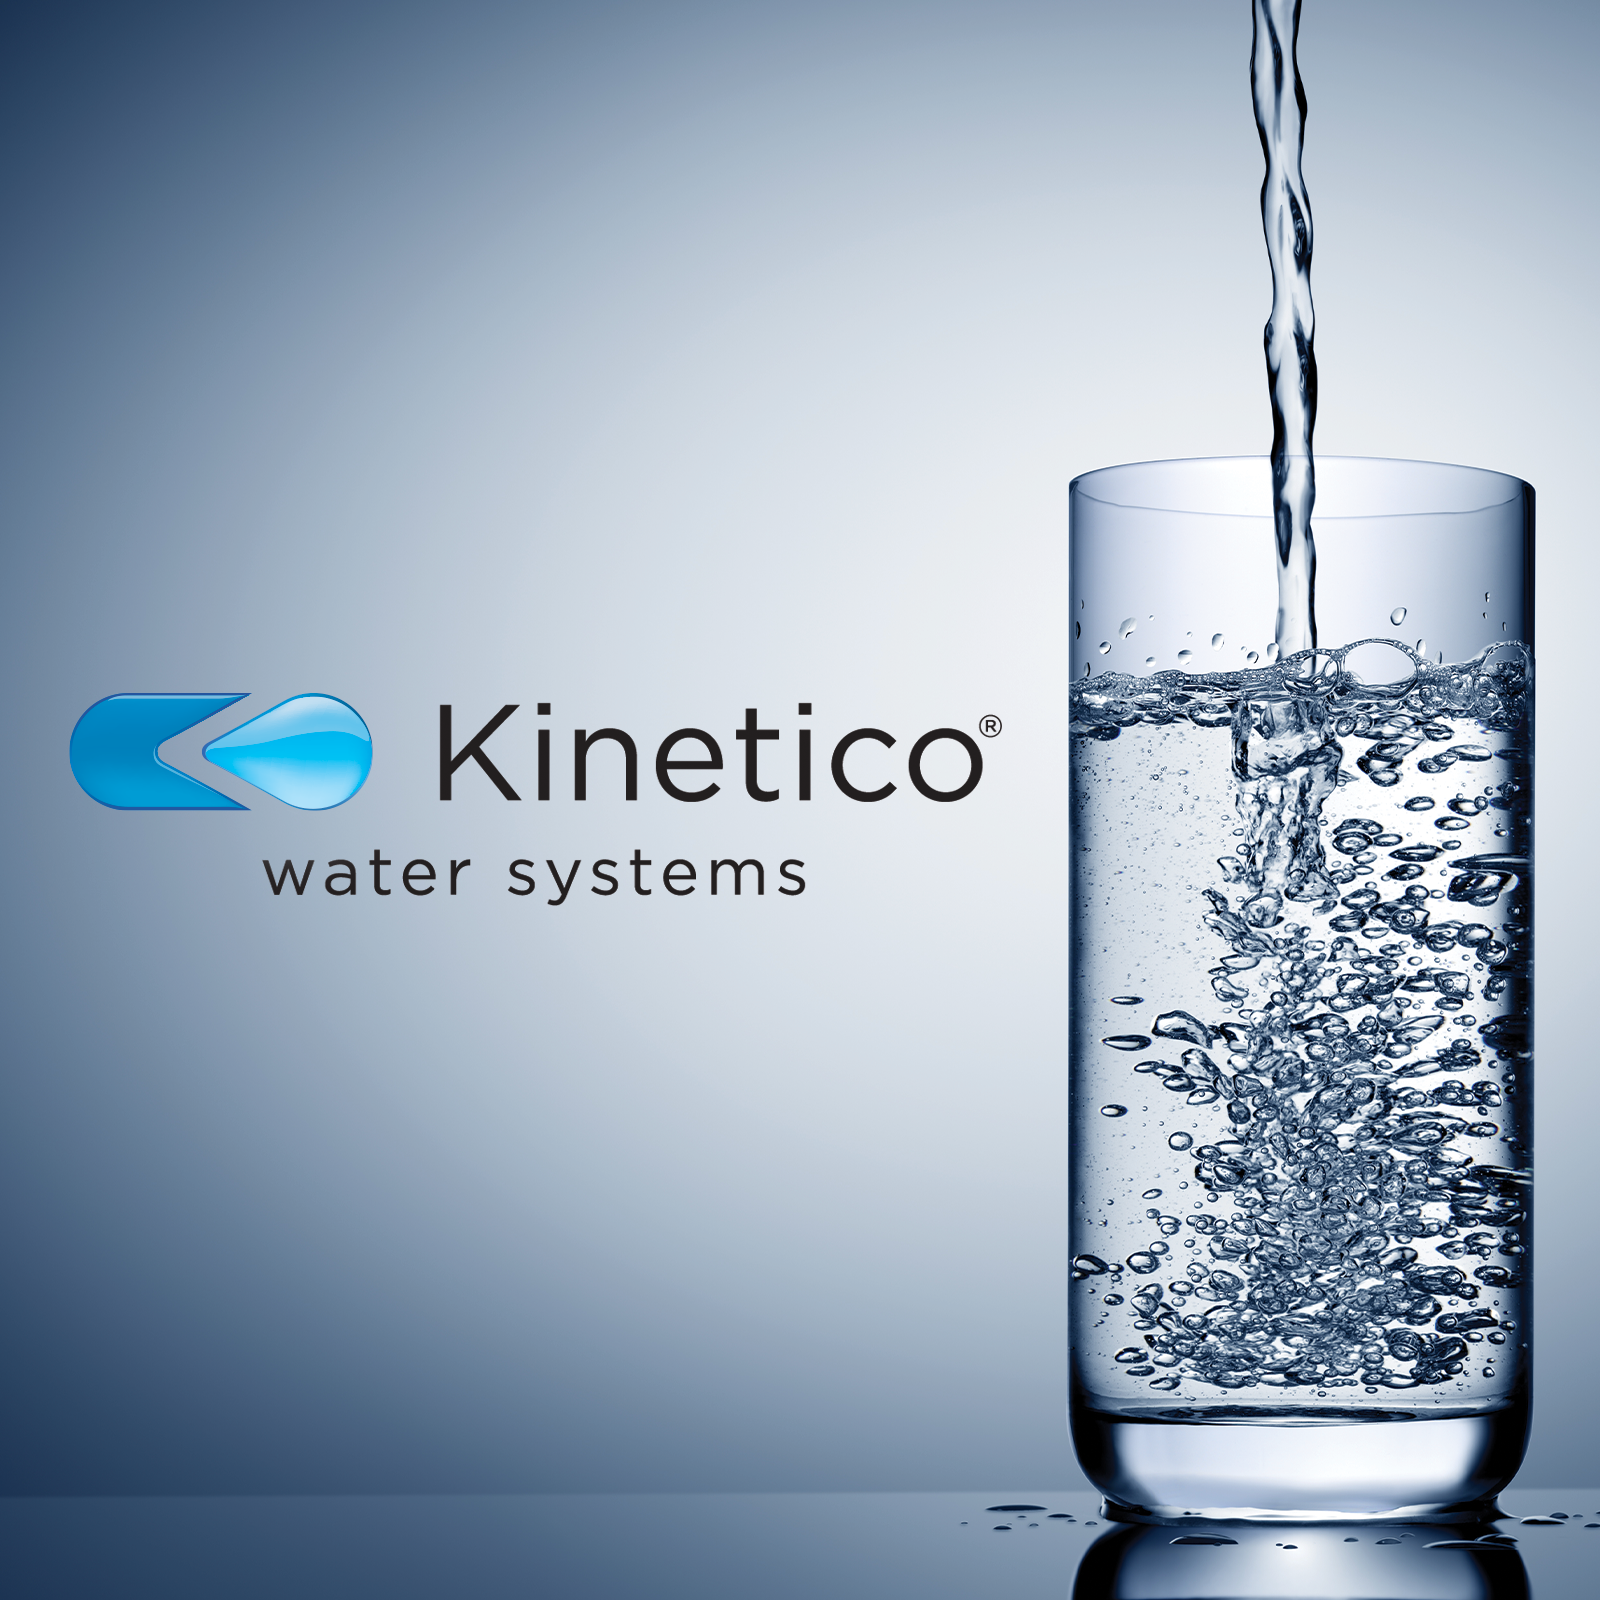 www.kinetico.com